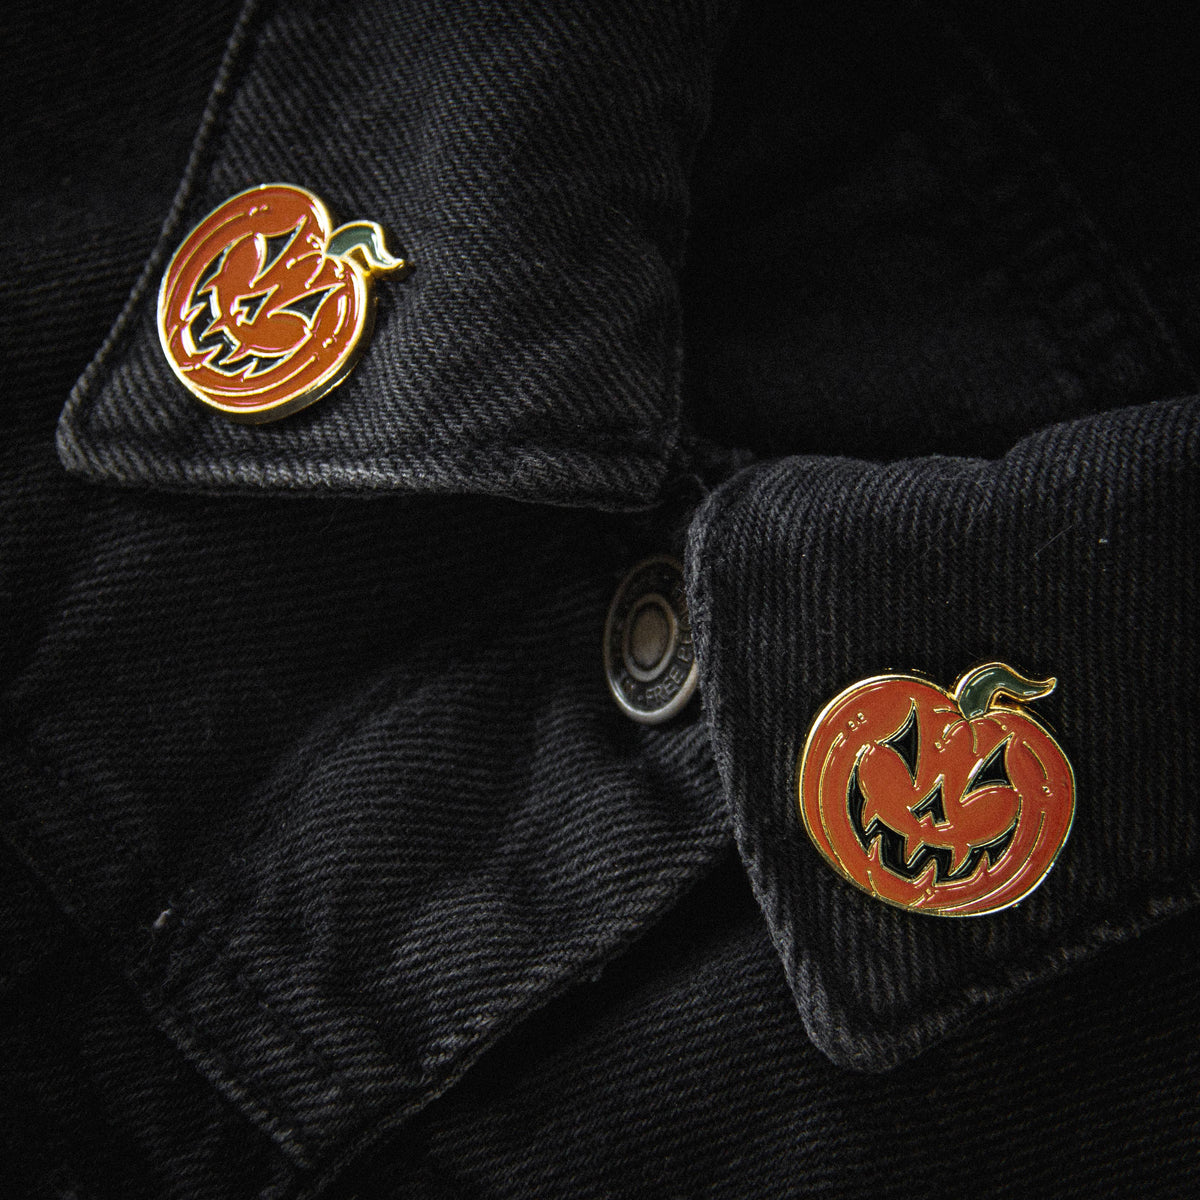 Jack-O-Lantern Collar Pin Set - Gold & Orange